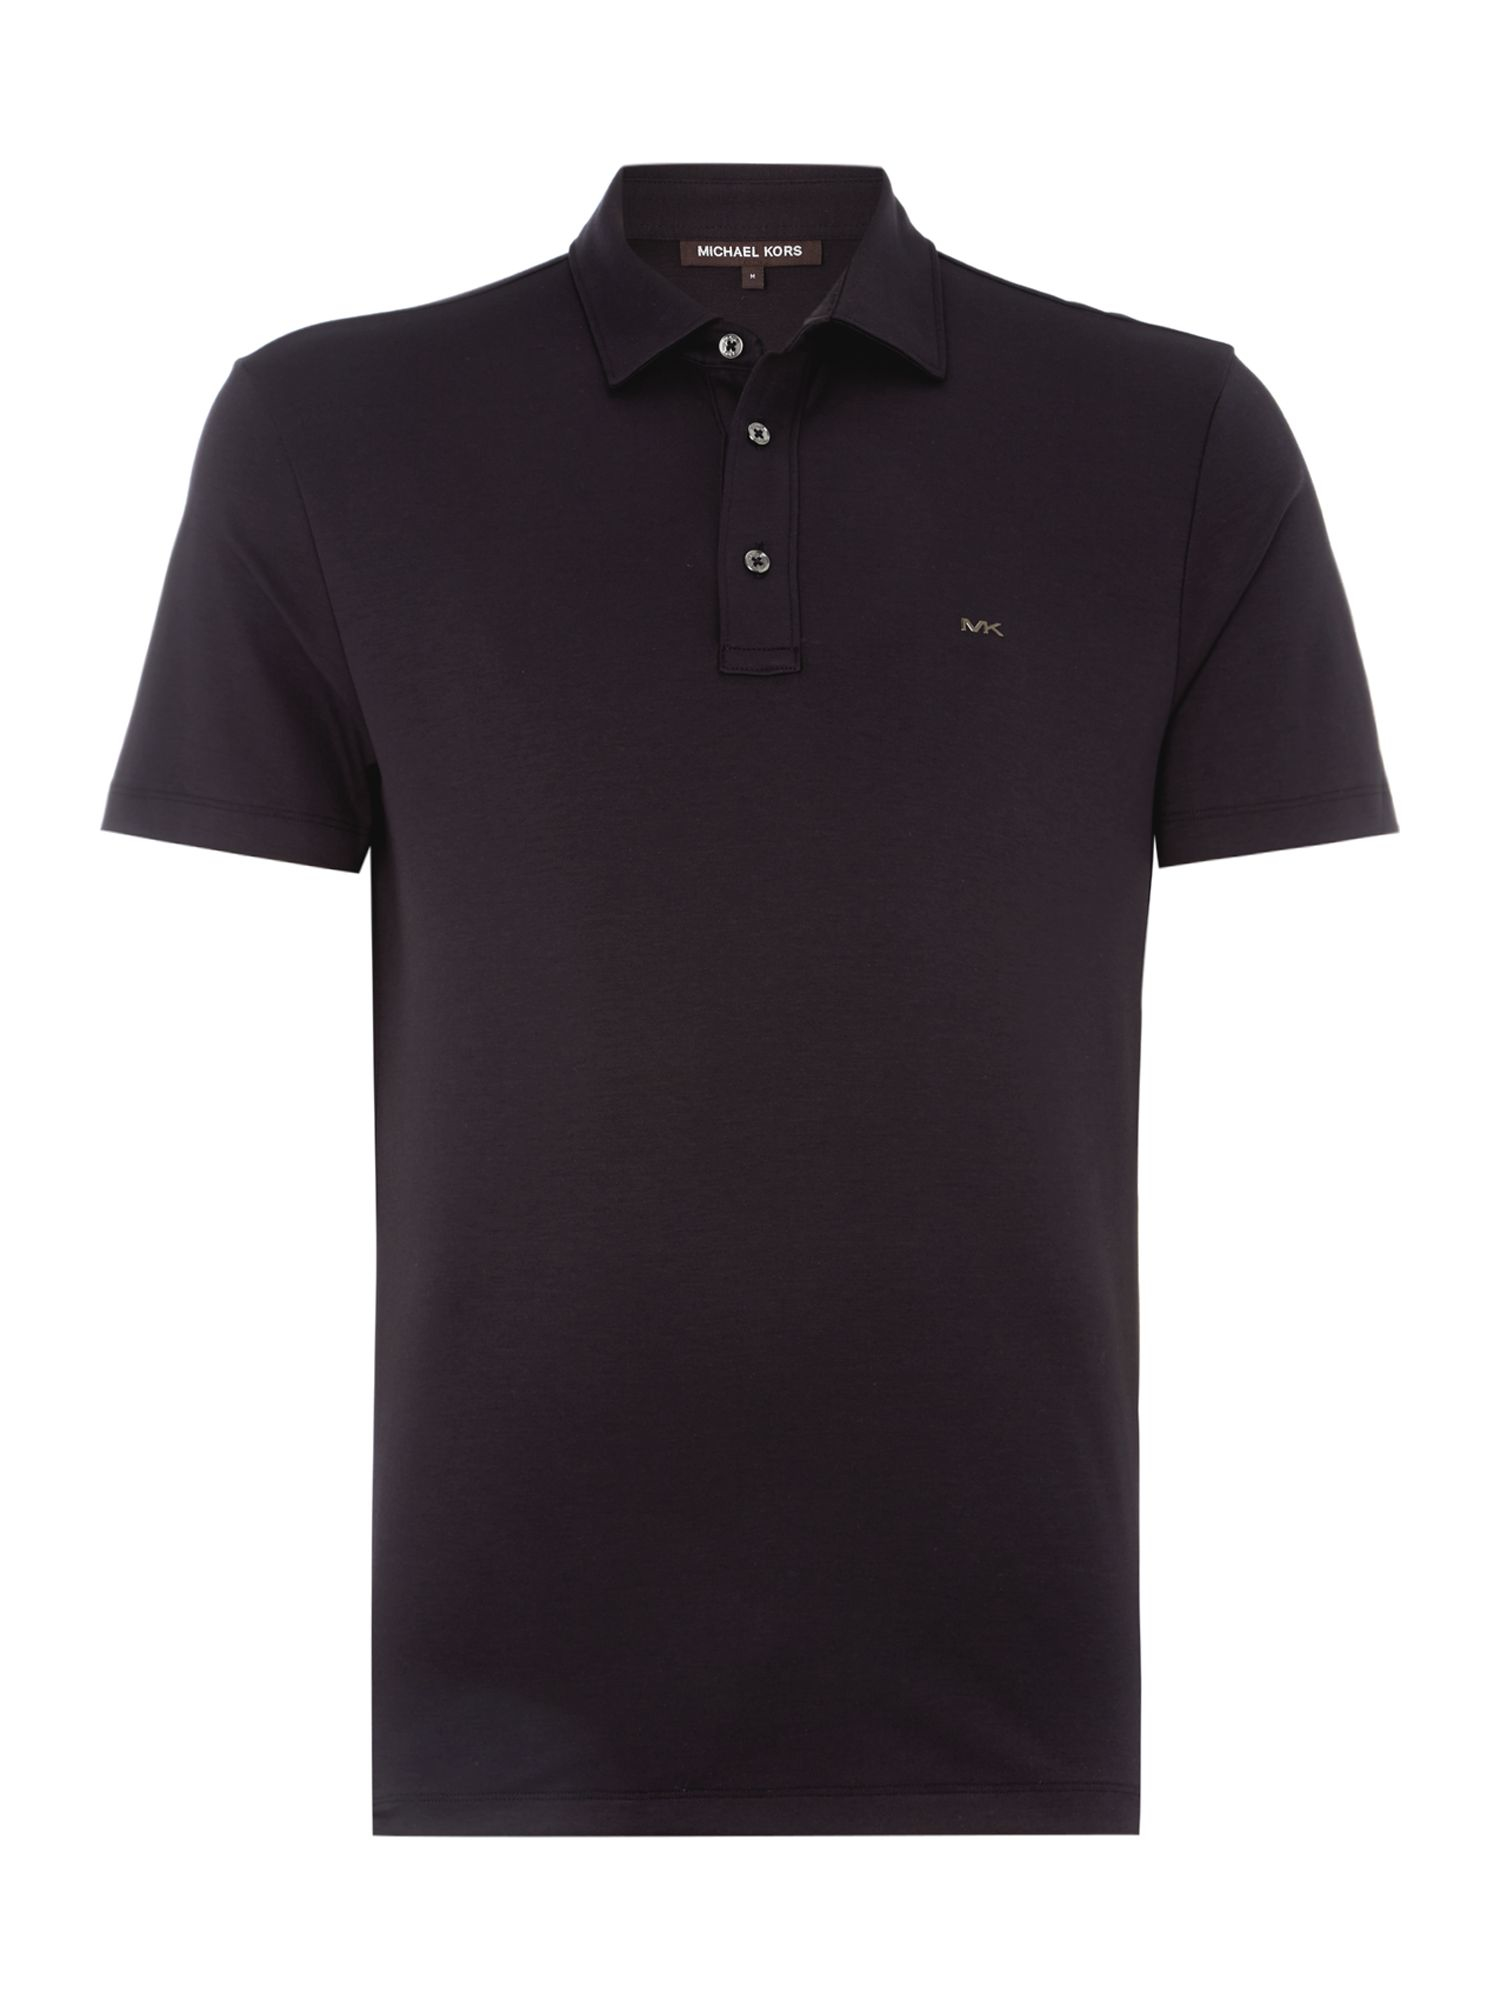 Michael Kors Sleek Mk Slim Fit Logo Polo Shirt in Black for Men | Lyst